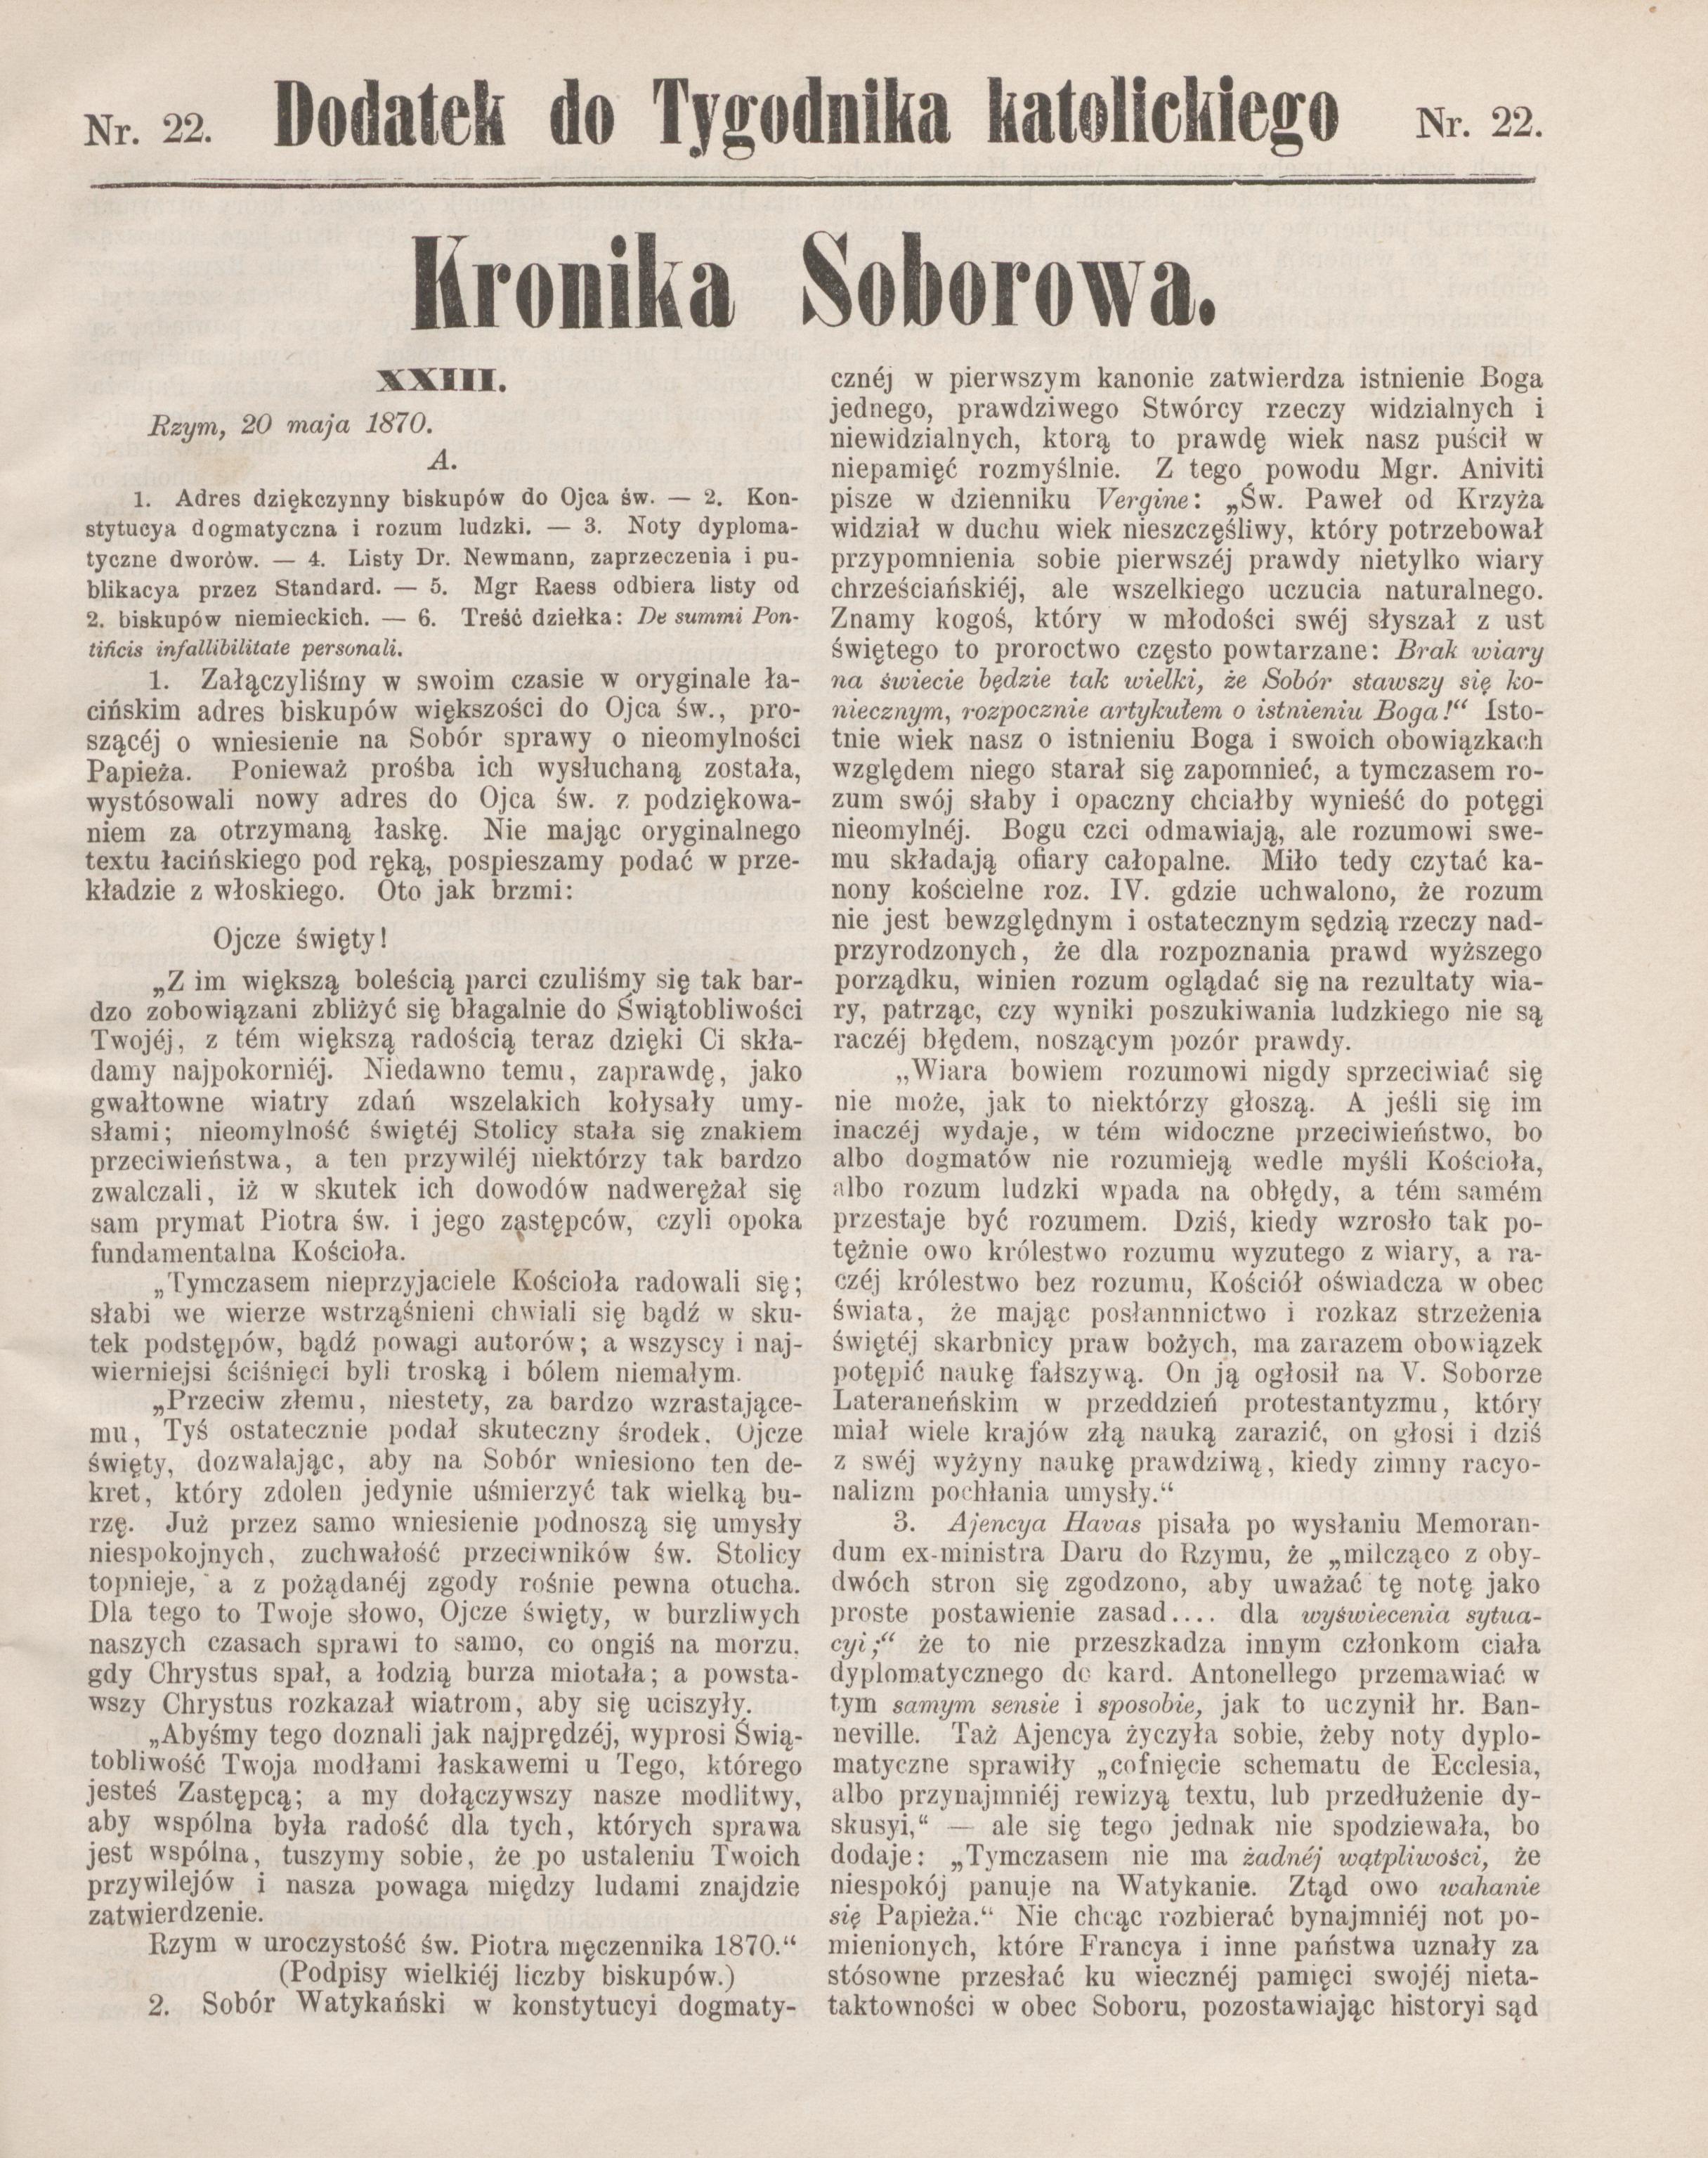 "Kronika Soborowa", XXIII. Dodatek do "Tygodnika Katolickiego", T. 11, nr 22, 3 czerwca 1870, Grodzisk.